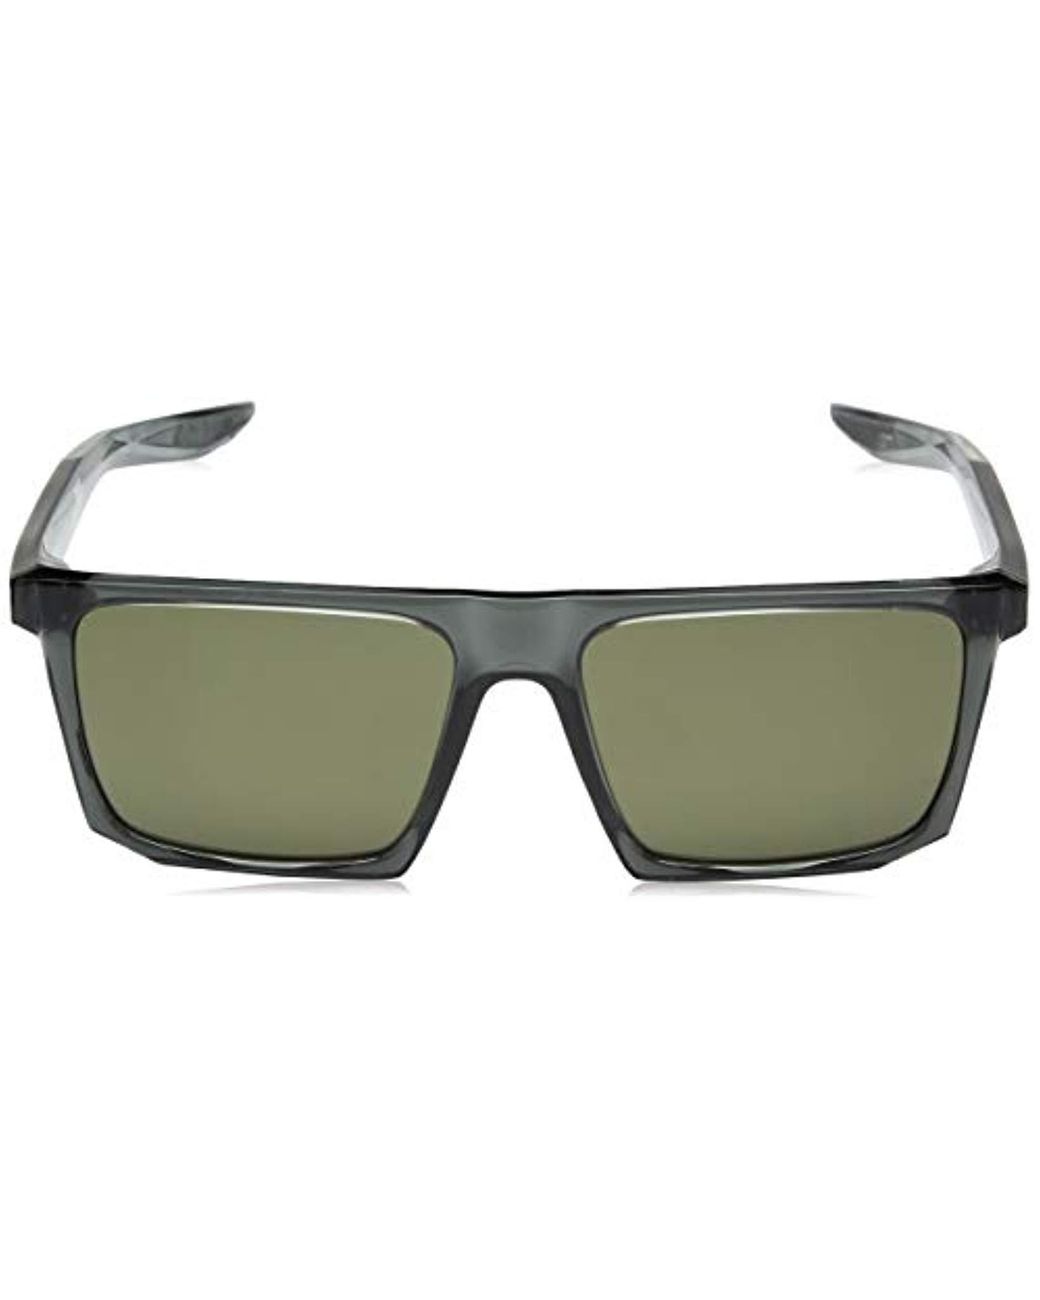 Nike Ledge Sunglasses for Men | Lyst